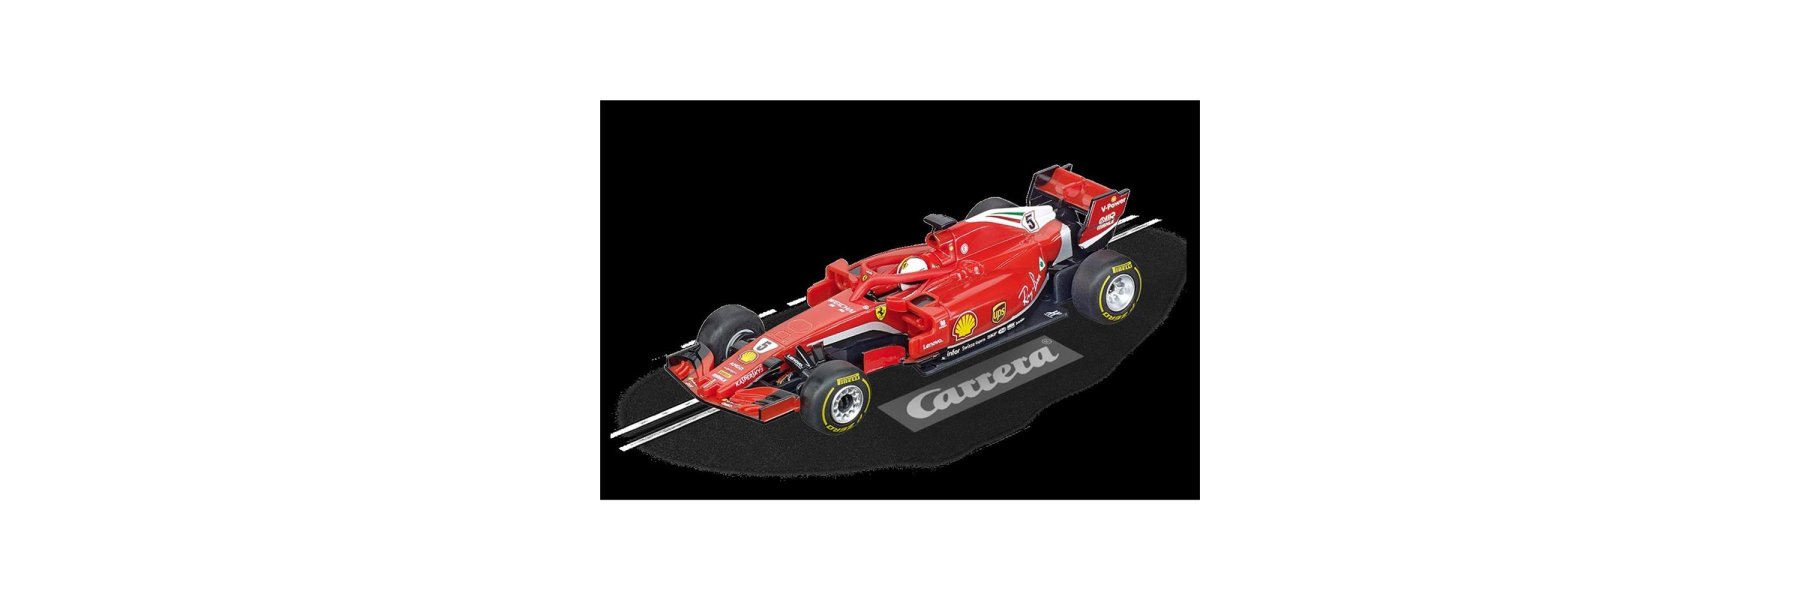 Ferrari SF71H "S.Vettel, No.5"